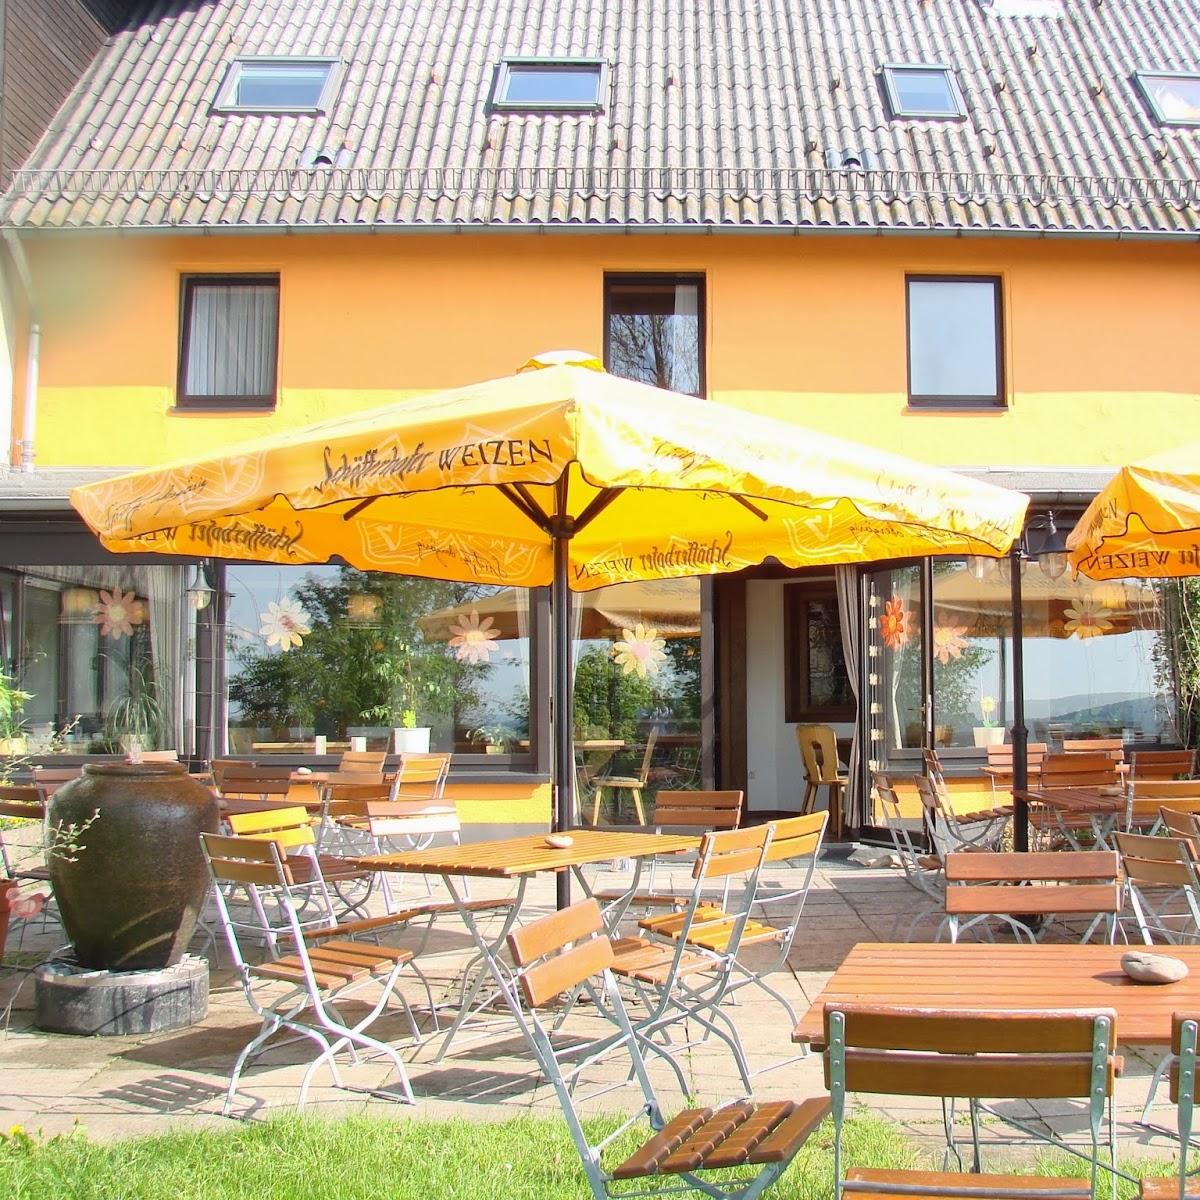 Restaurant "Boglerhaus" in Schwarzenborn